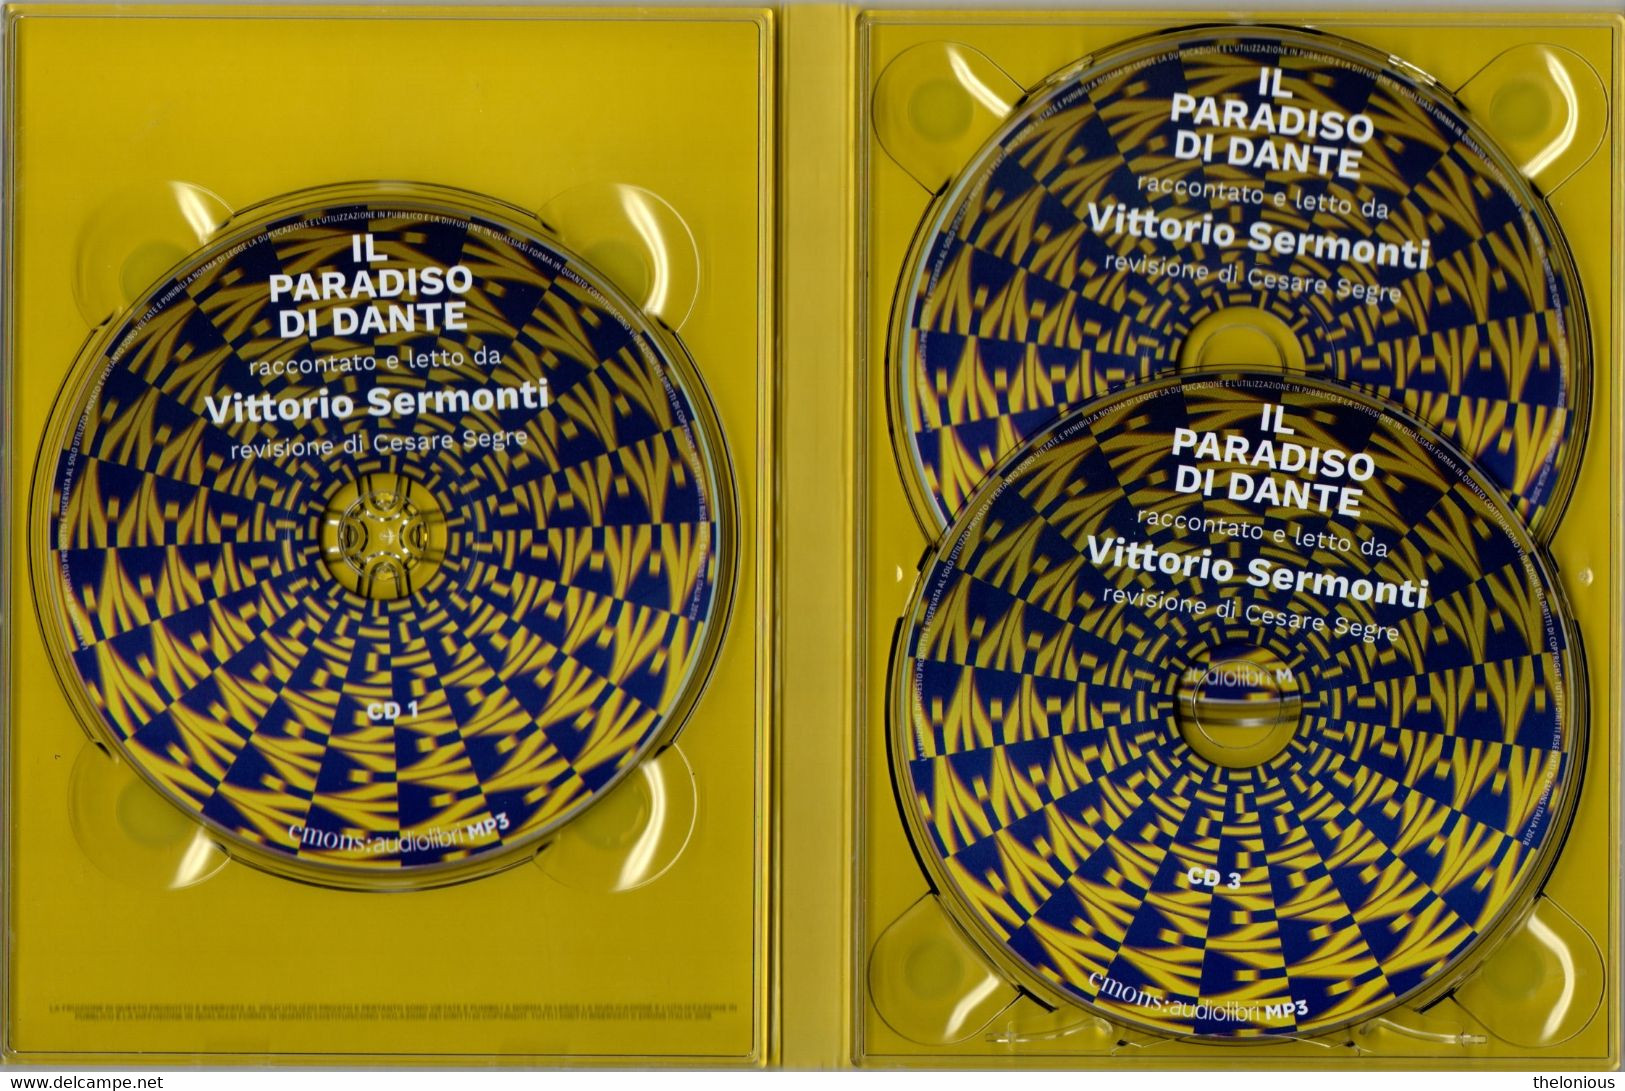 # Audiolibro: Il Paradiso Di Dante Raccontato E Letto Da Vittorio Sermonti, 3 CD MP3 - Fantascienza E Fantasia